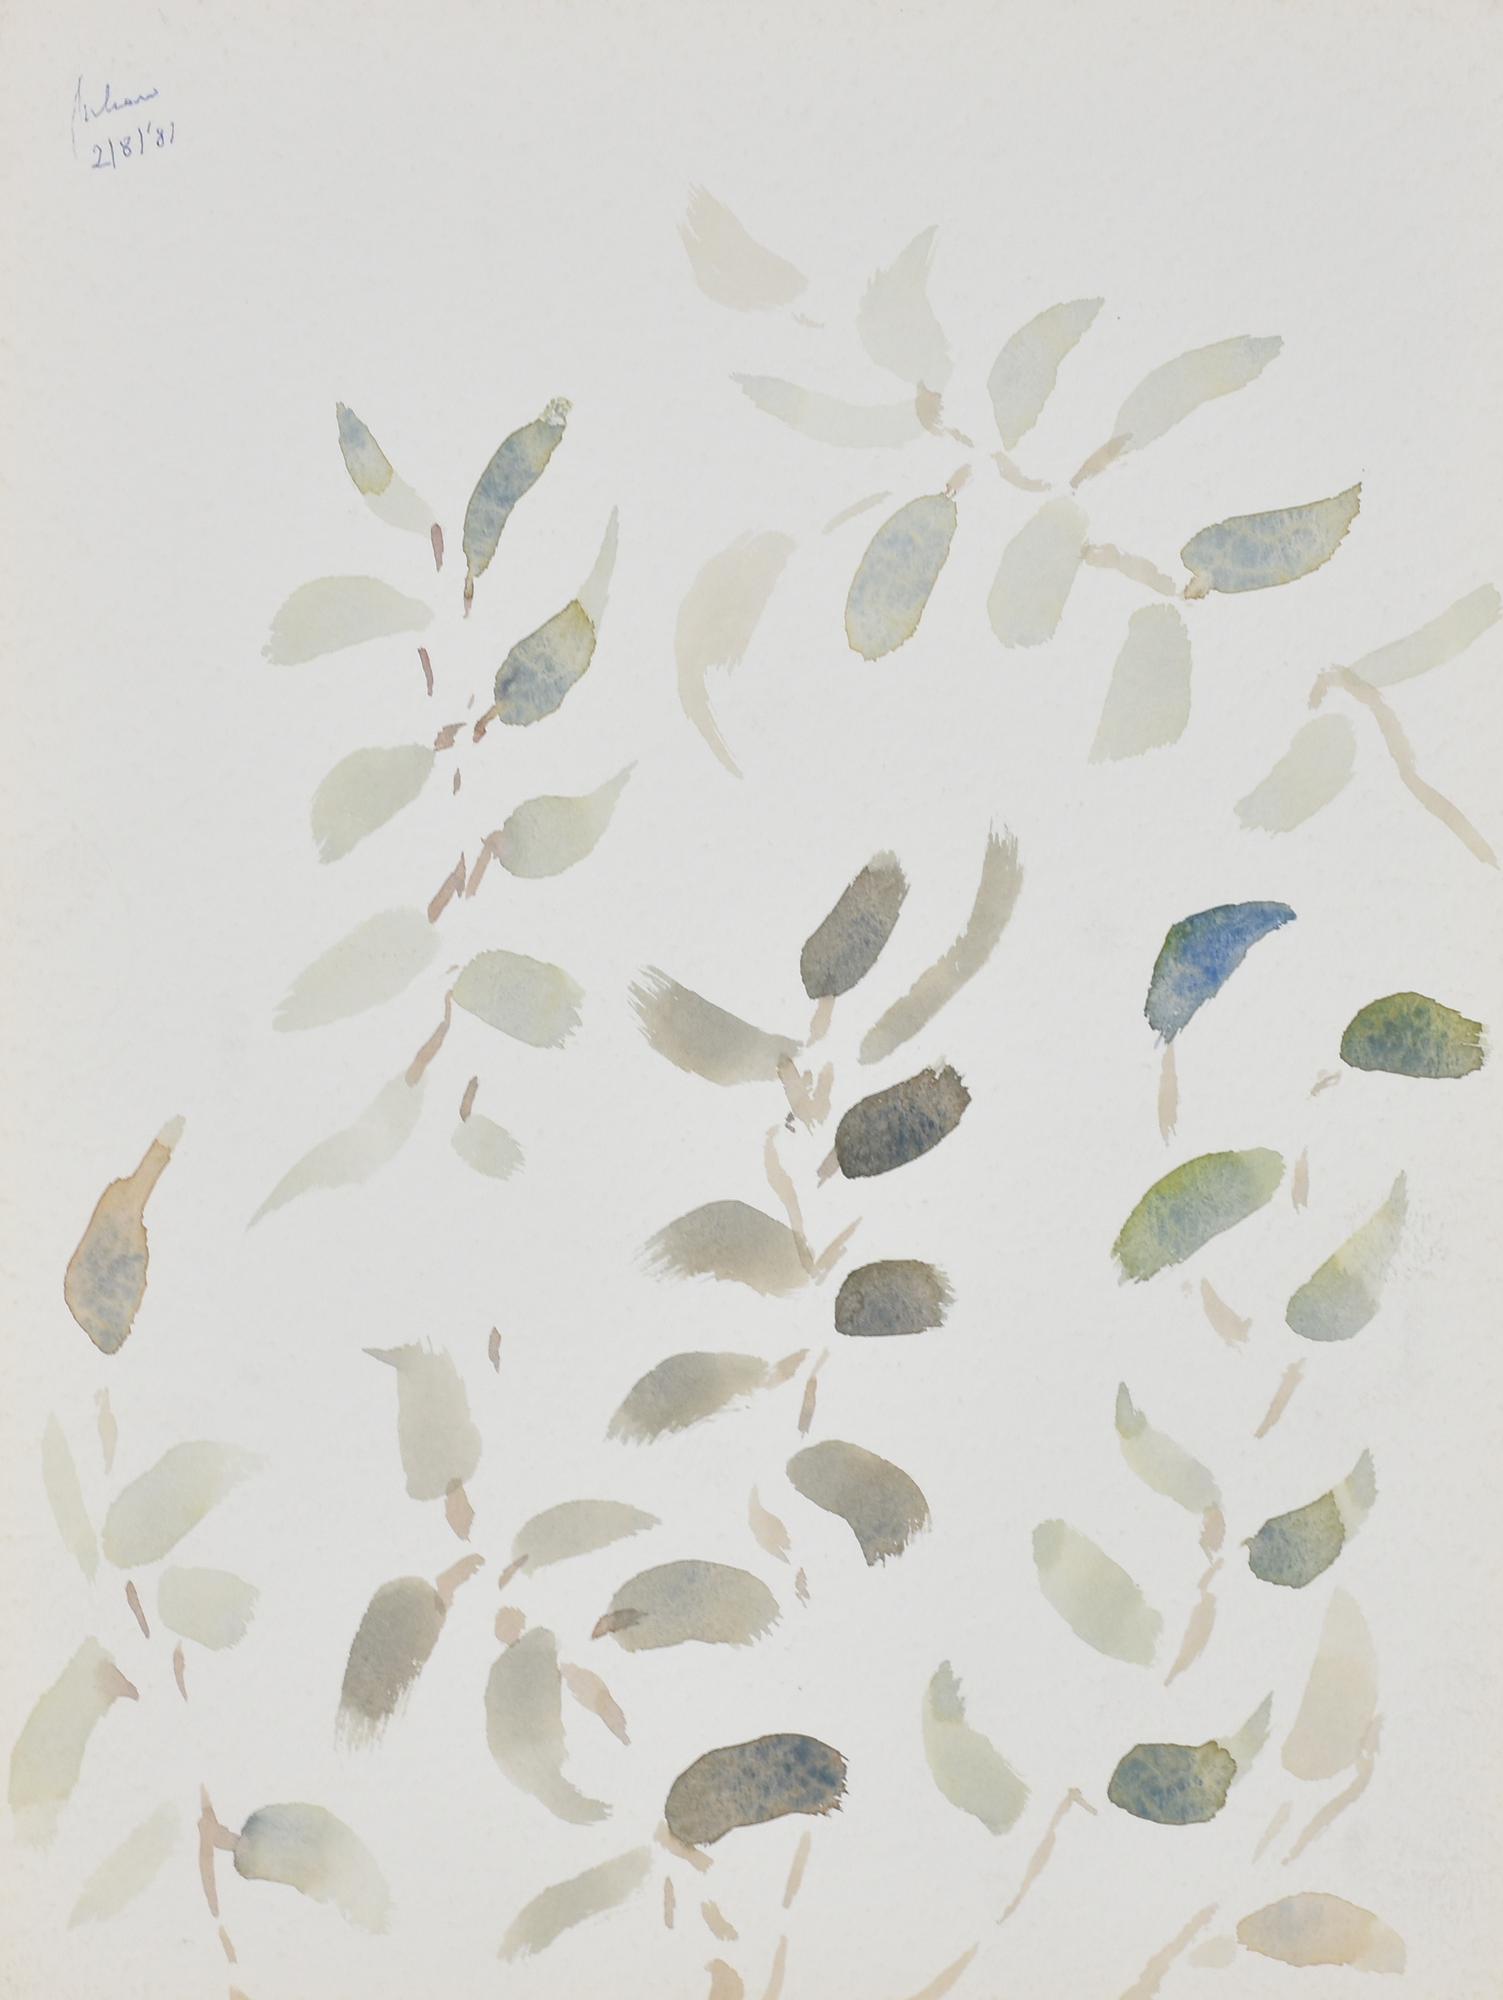 Albino Galvano (1907 - 1990) FOGLIE, 1981 acquarello su carta, cm 40x30 firma e data